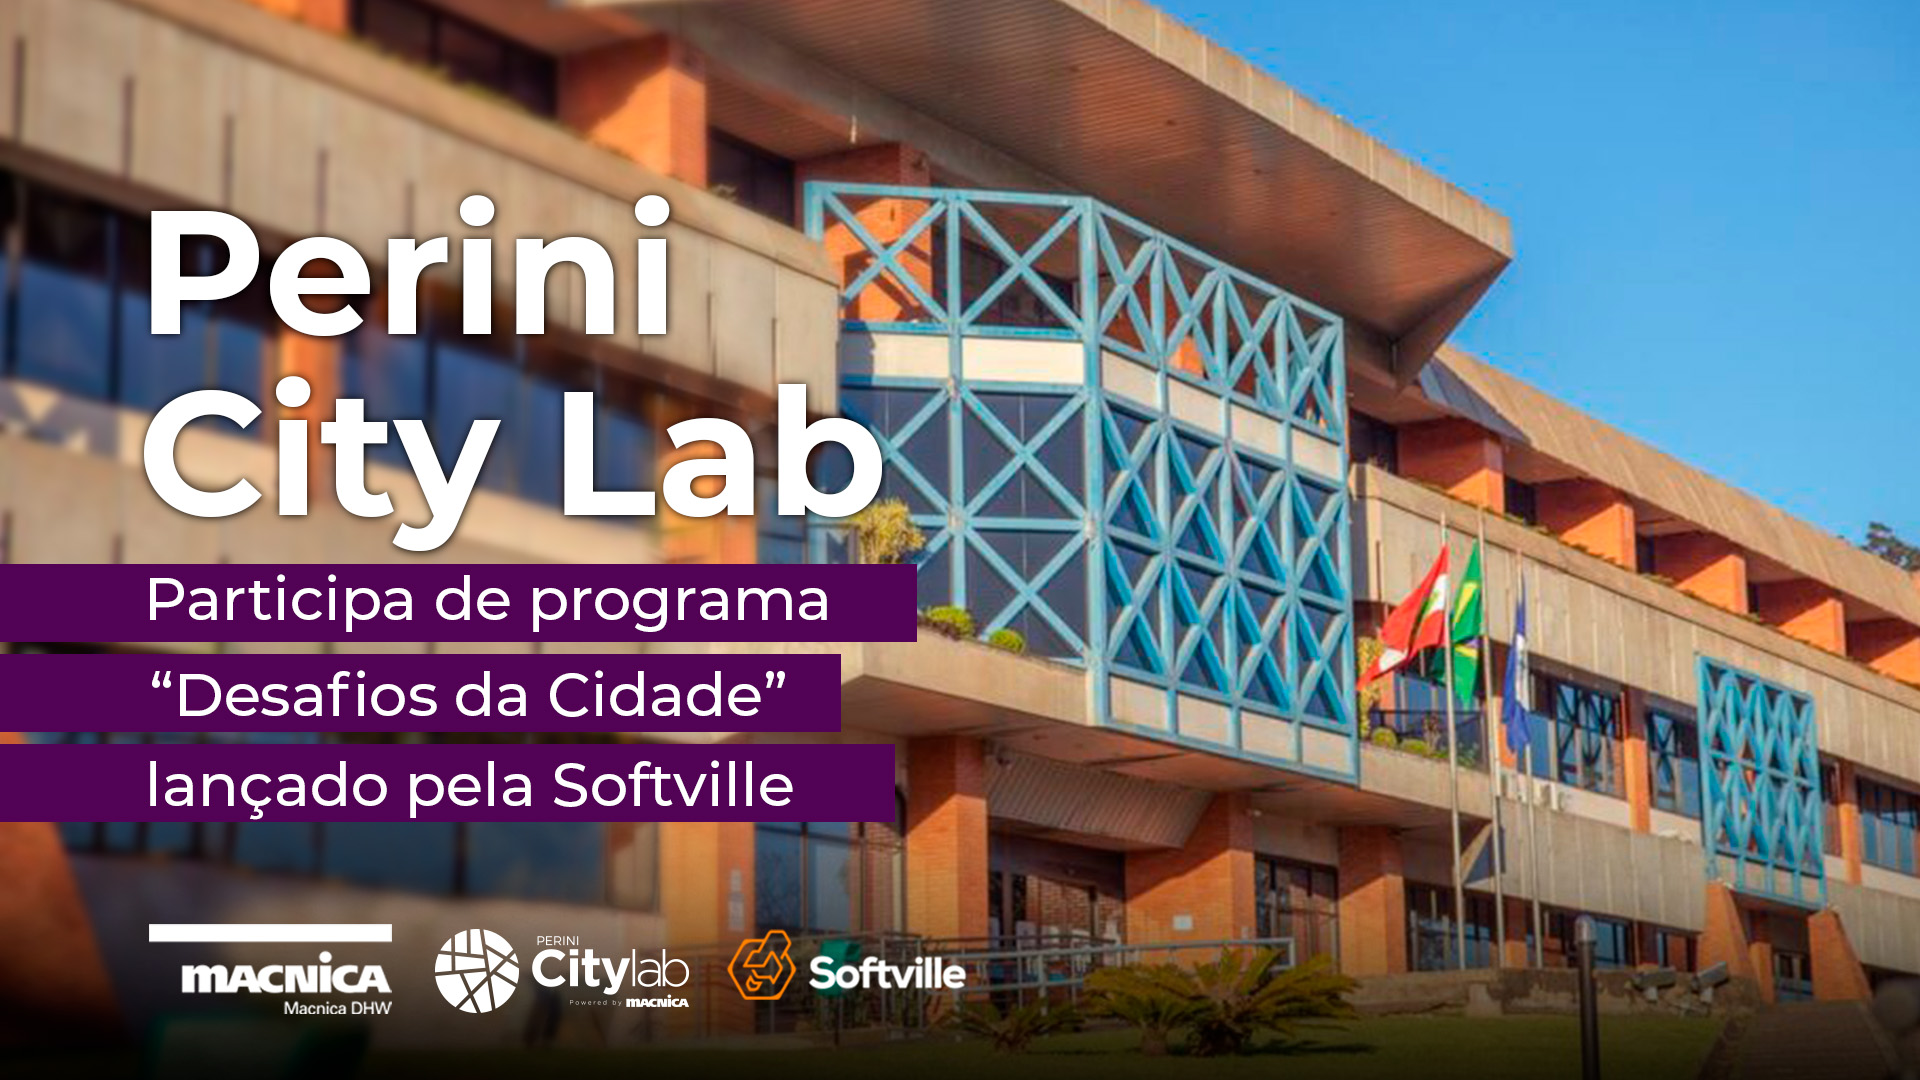 Programa “Desafios da Cidade” é lançado pela Softville em parceria com Perini City Lab e Fapesc